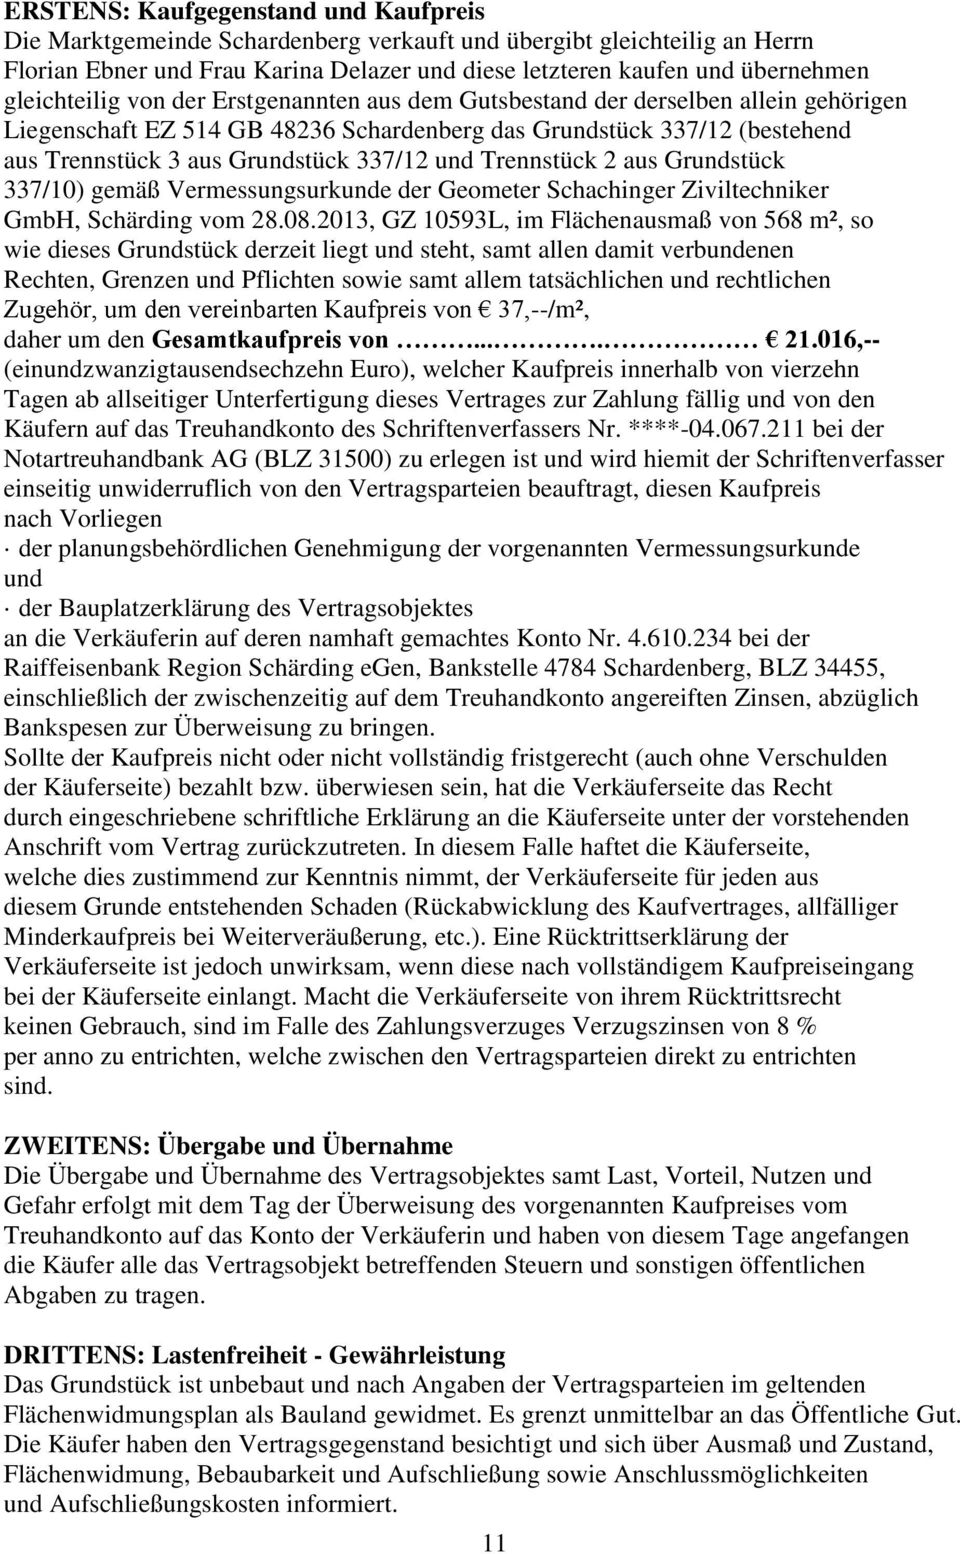 und Trennstück 2 aus Grundstück 337/10) gemäß Vermessungsurkunde der Geometer Schachinger Ziviltechniker GmbH, Schärding vom 28.08.